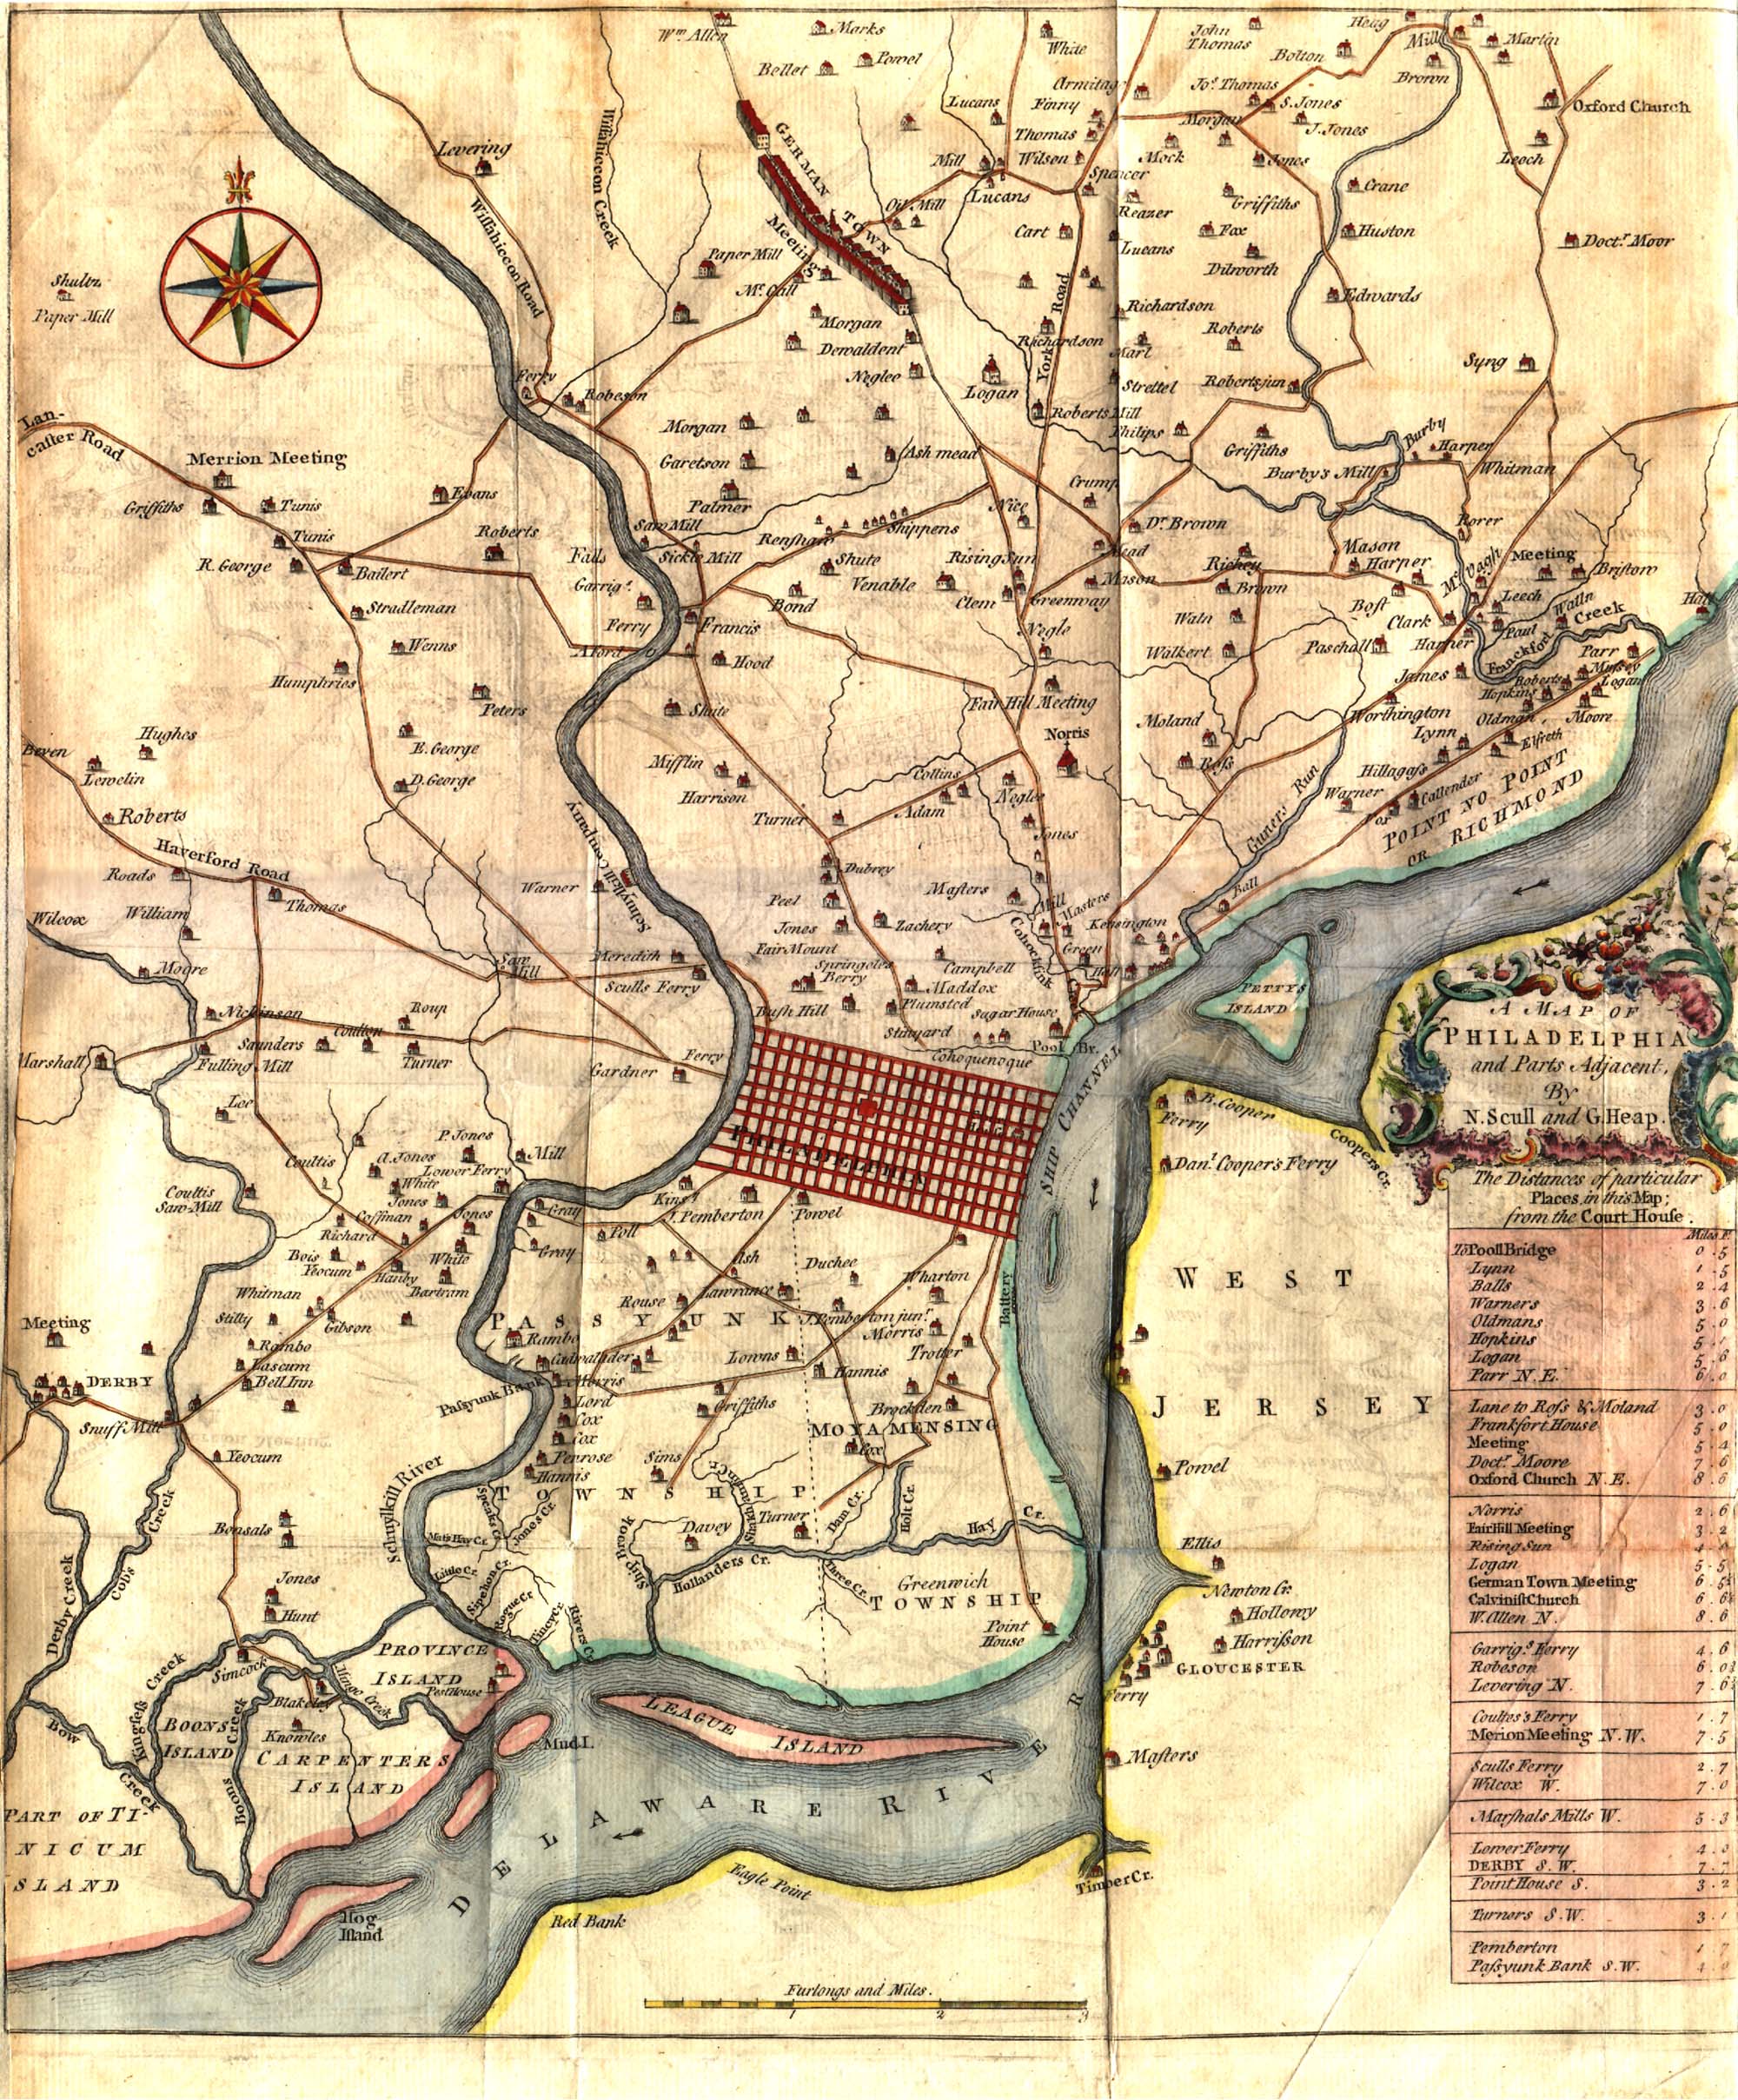 Philadelphia - Scull & Heap - 1753 copy.jpg